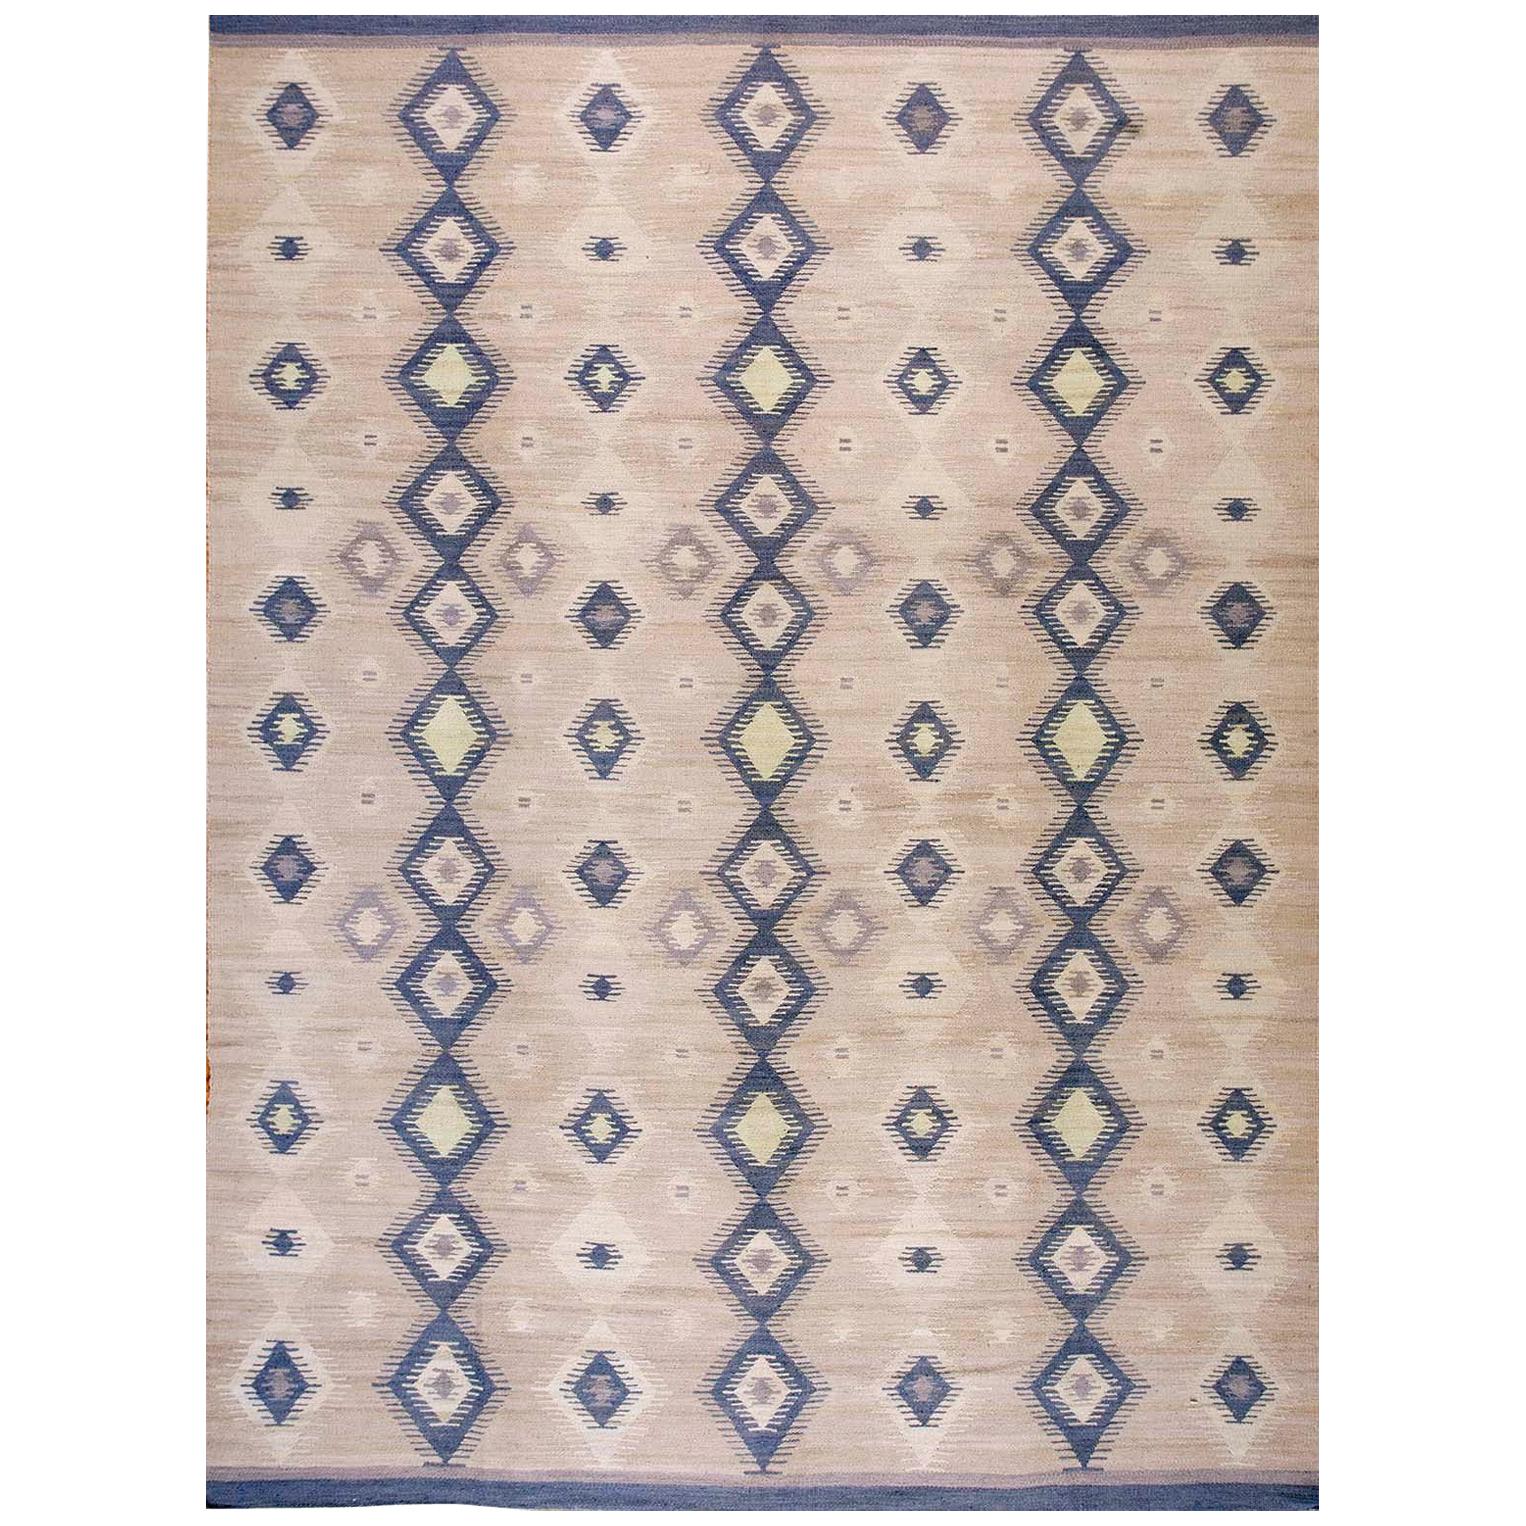 Zeitgenössischer handgewebter Flachgewebe-Teppich im Navajo-Stil (9' x 12' - 275 x 365 cm)